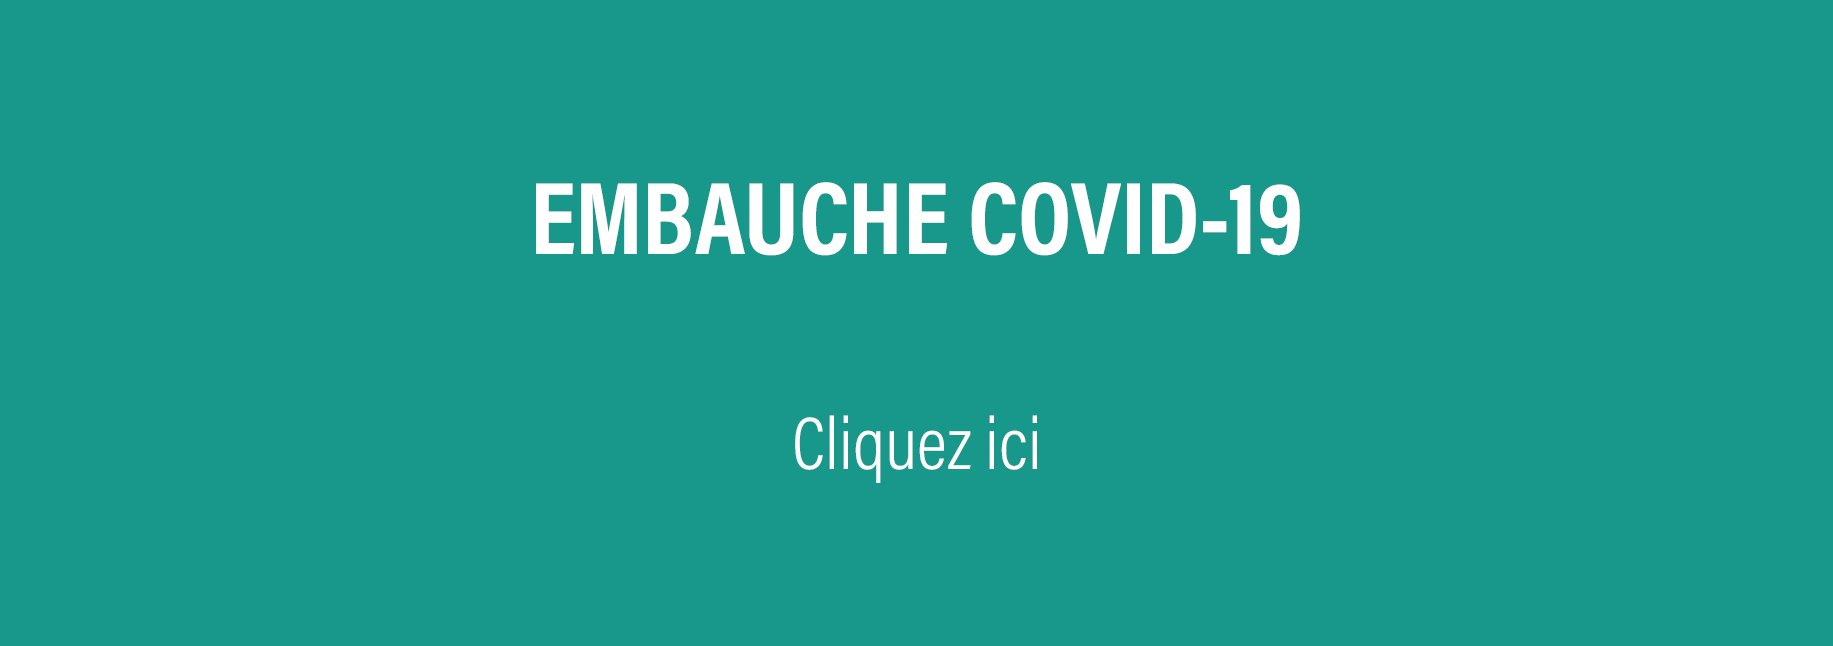 Embauche COVID-19